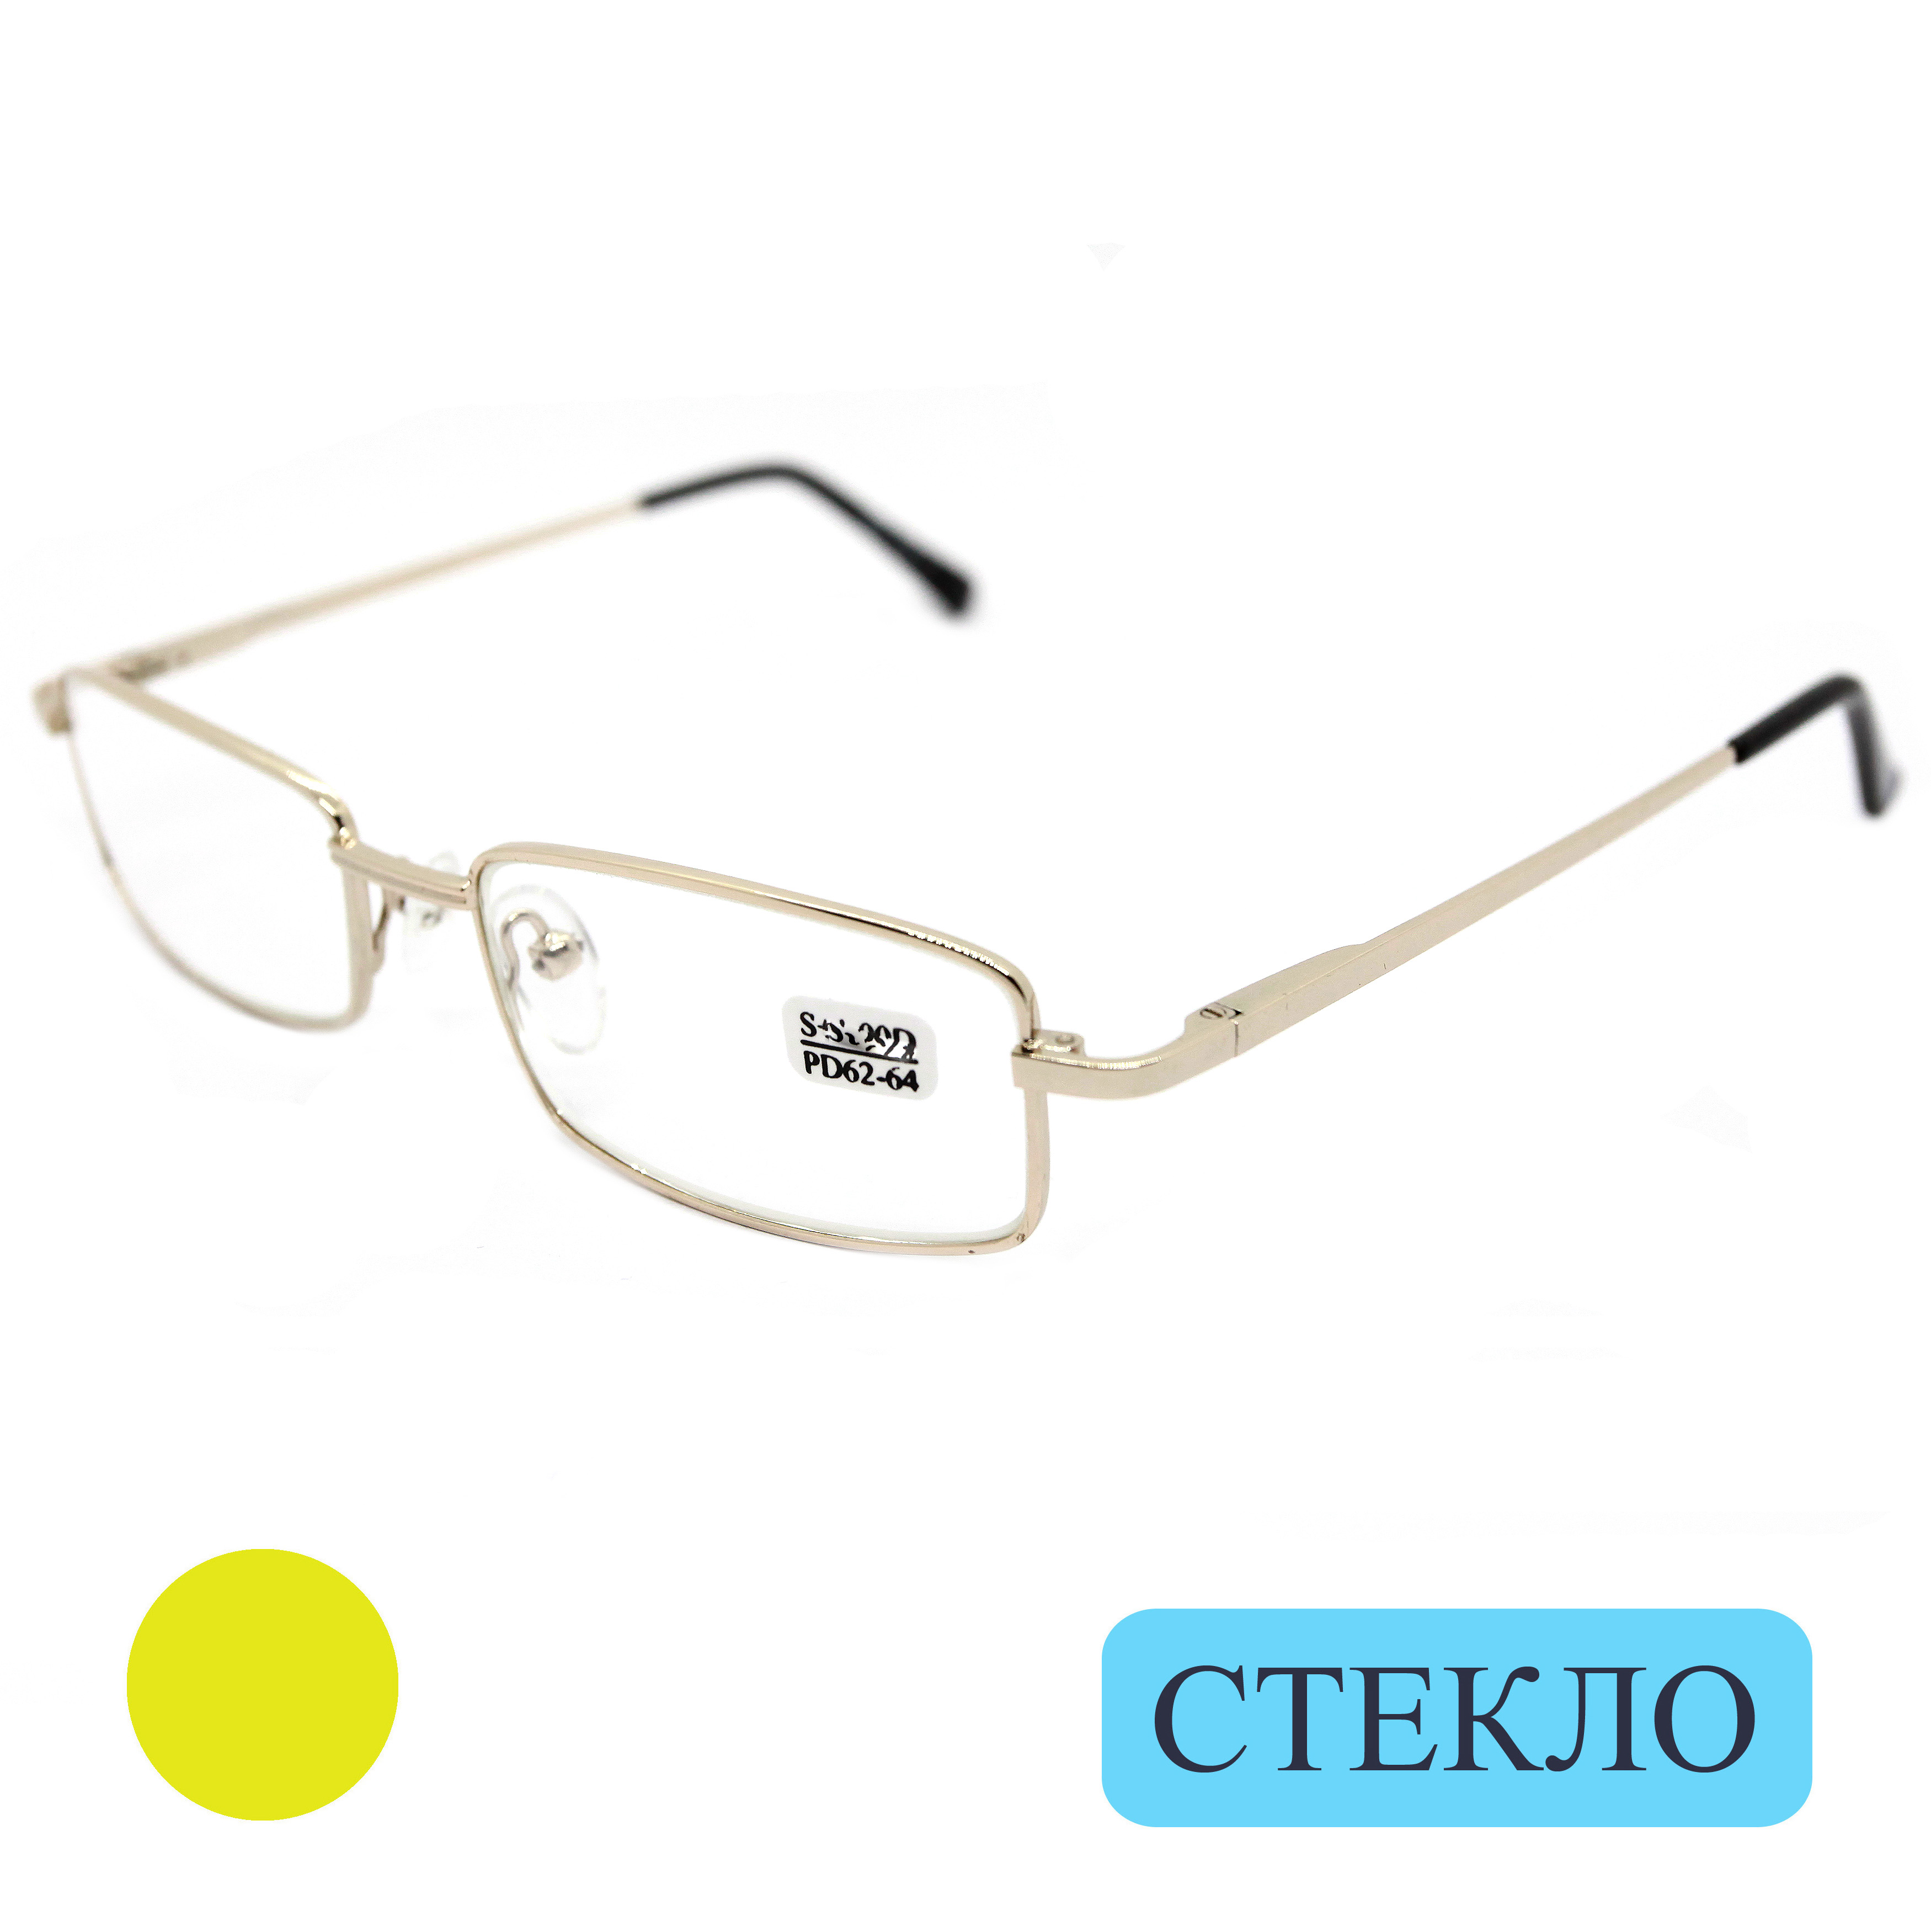 Готовые очки ELITE 5096, со стеклянной линзой, +3.50, c футляром, цвет золотой, РЦ 62-64